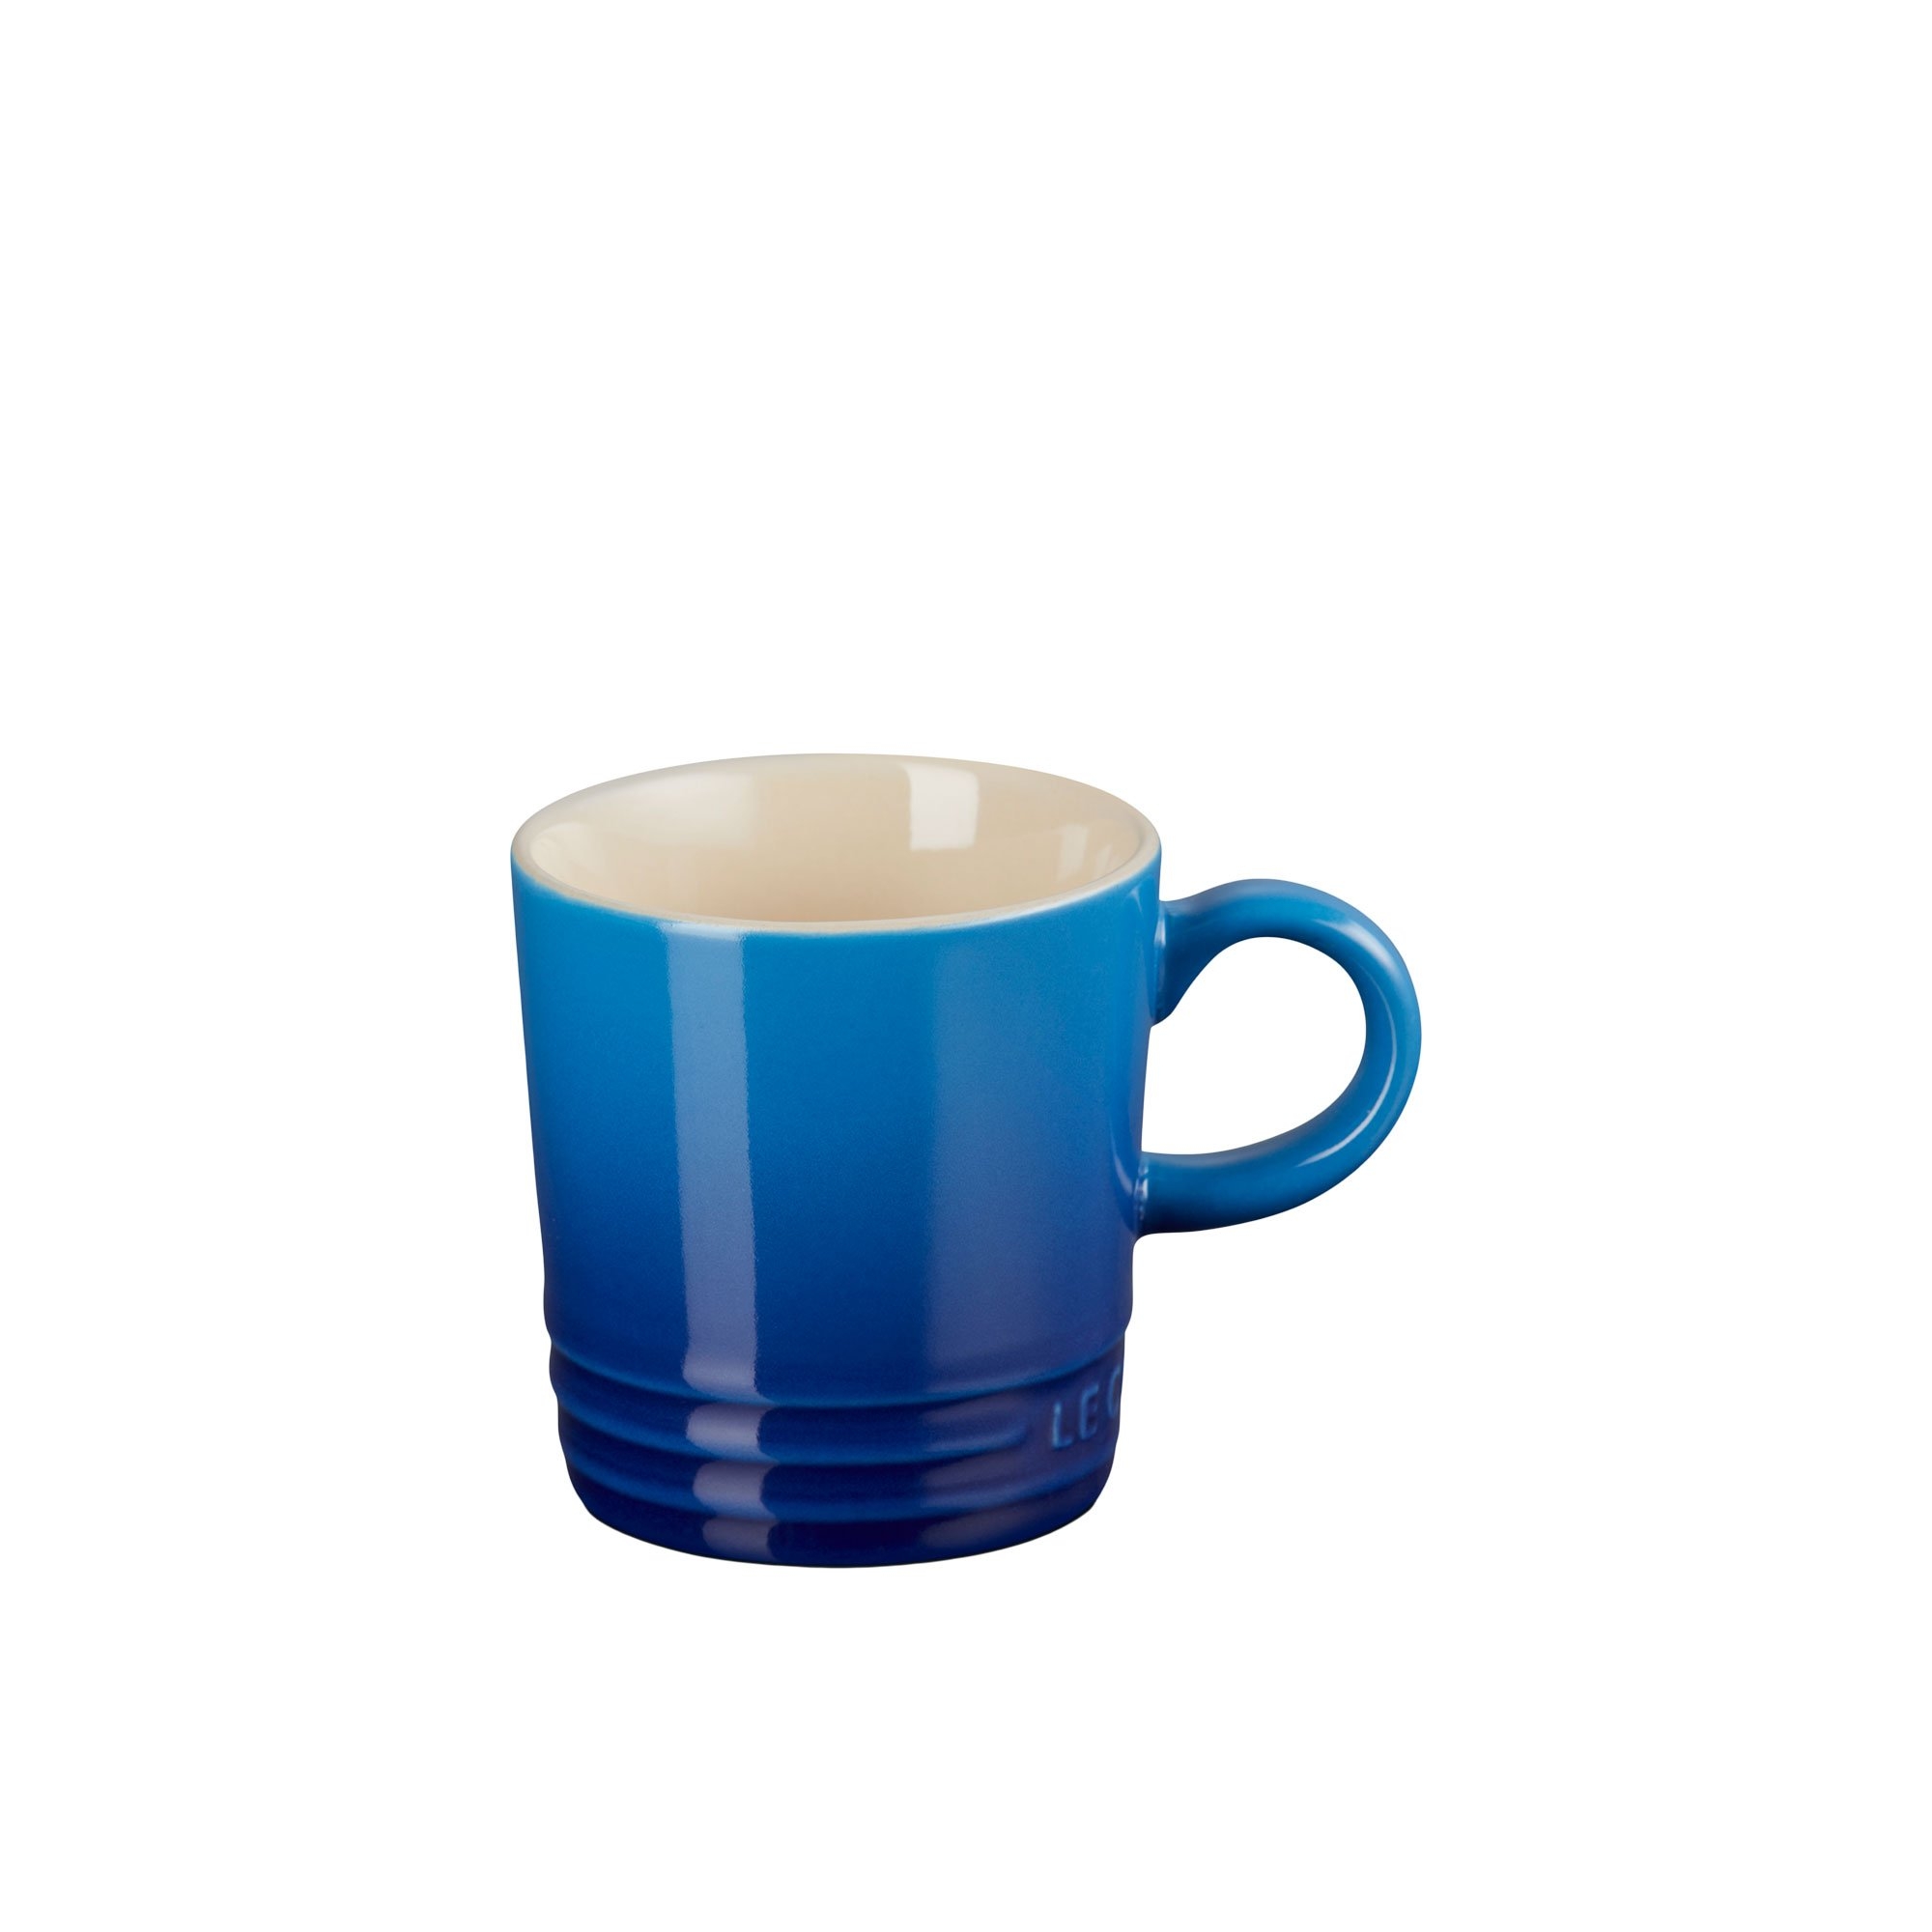 Le Creuset Stoneware Espresso Mug 100ml Azure Blue Image 1